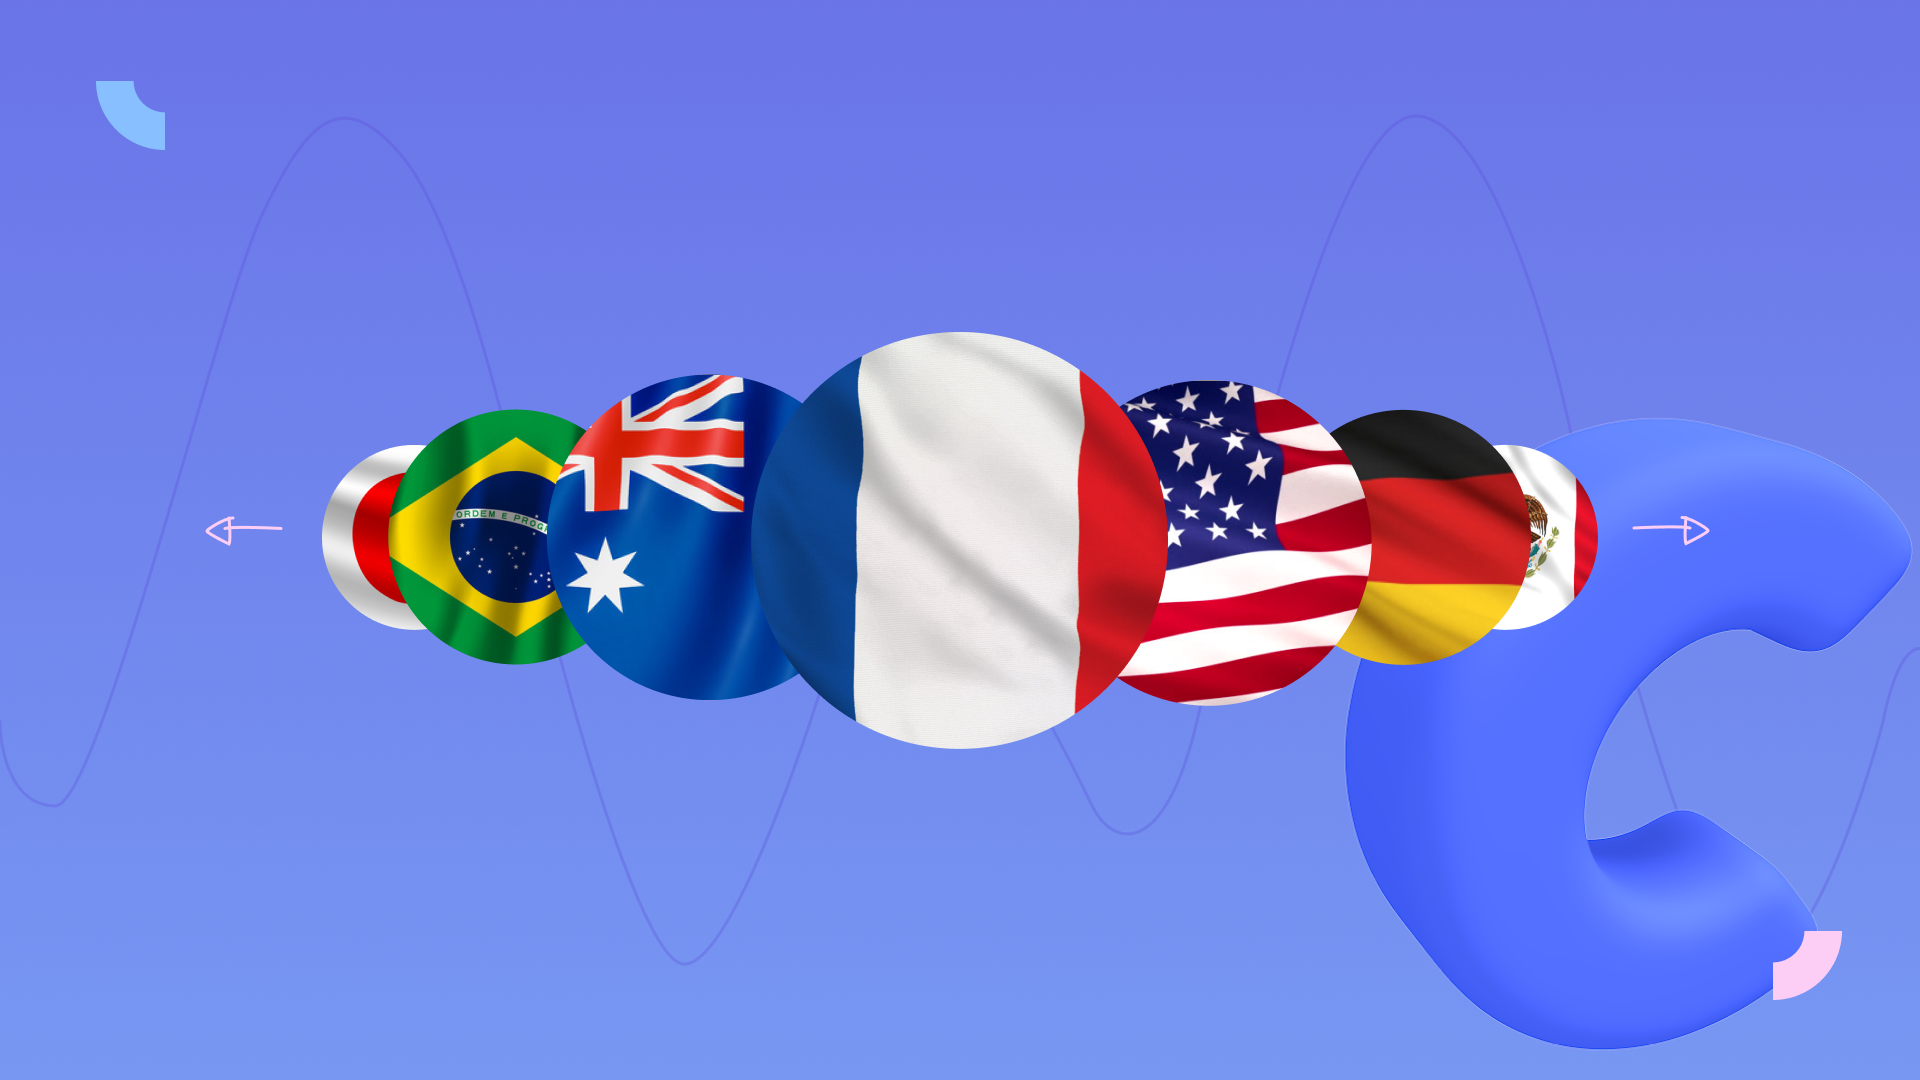 Подборка флагов разных стран — символизирует многообразие языков, поддерживаемых генератором речи в Clipchamp.